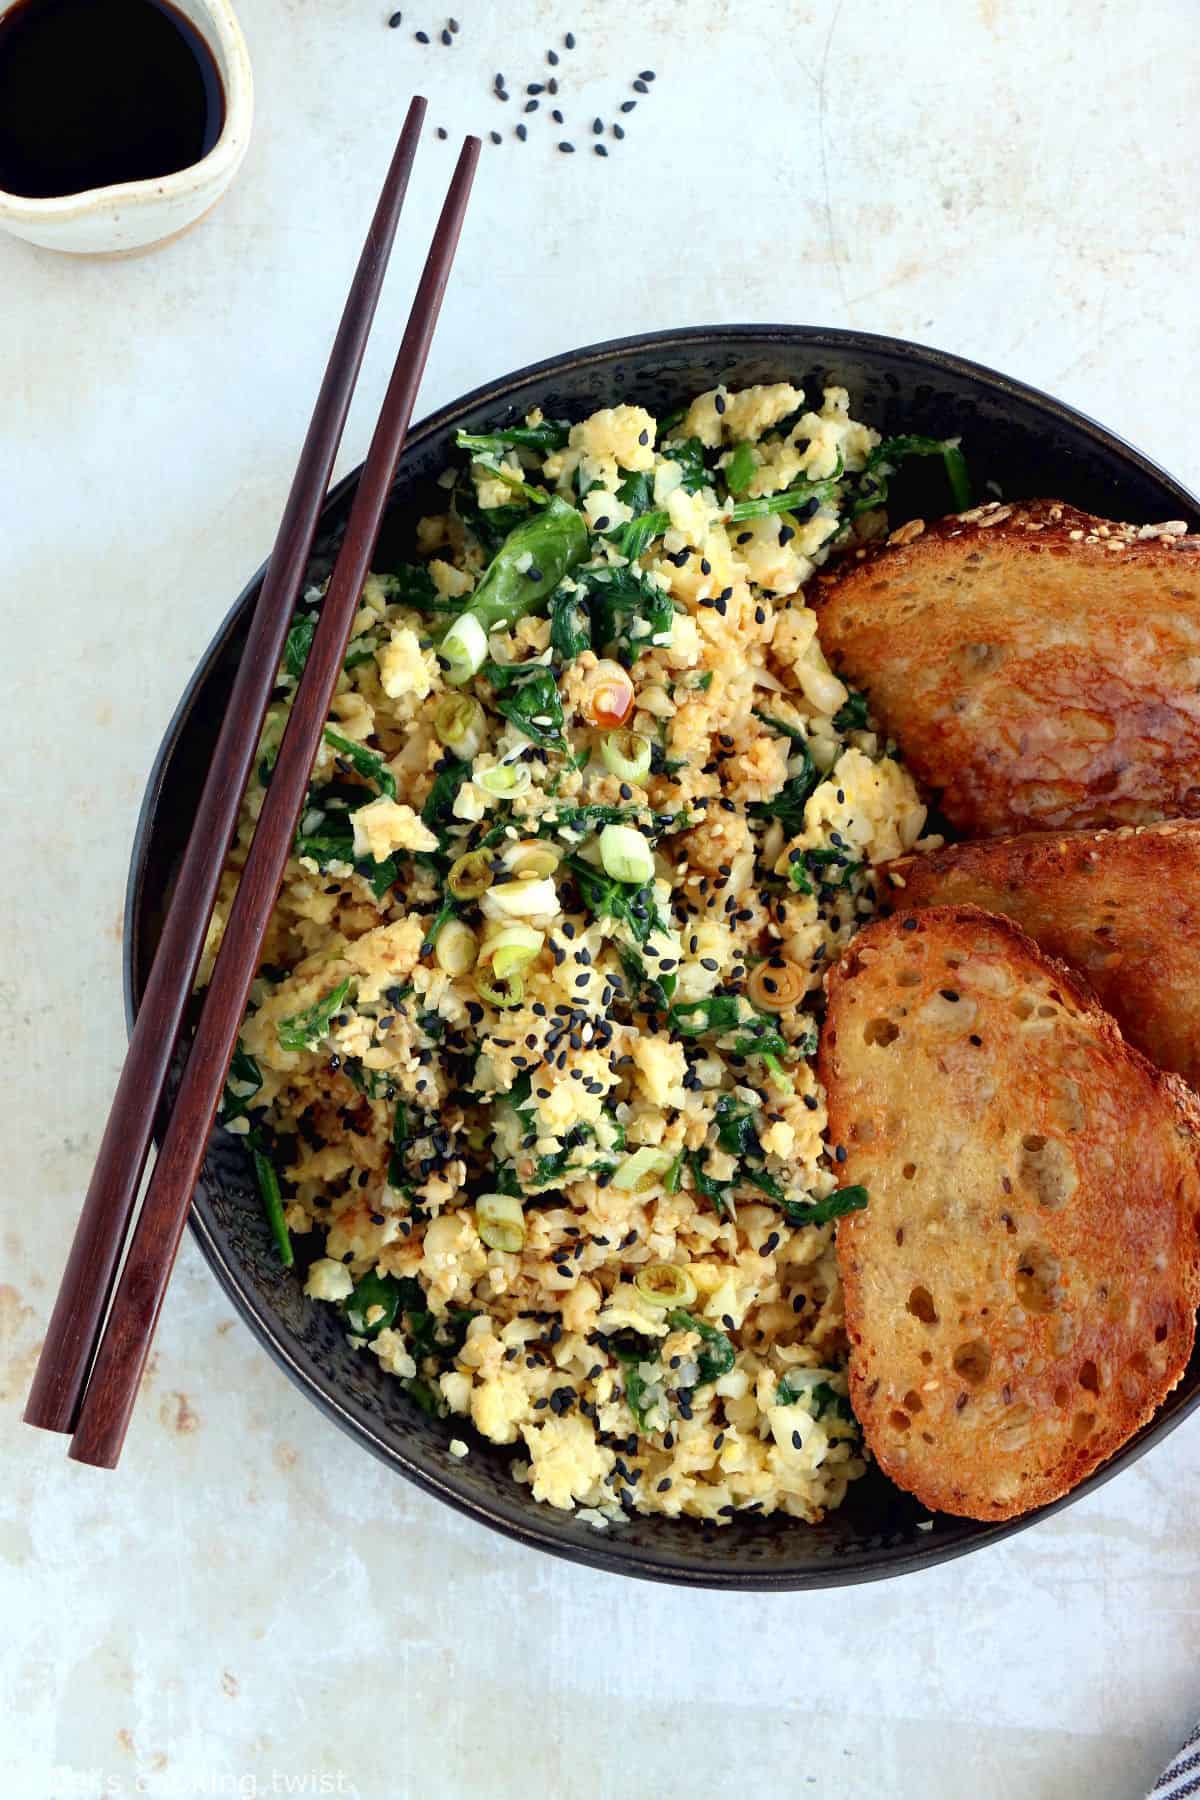 Facile et très rapide à préparer, cette brouillade d'oeufs, épinards et riz de chou-fleur sauté à l'asiatique constitue un plat végétarien sain, riche en protéines et naturellement gluten-free.